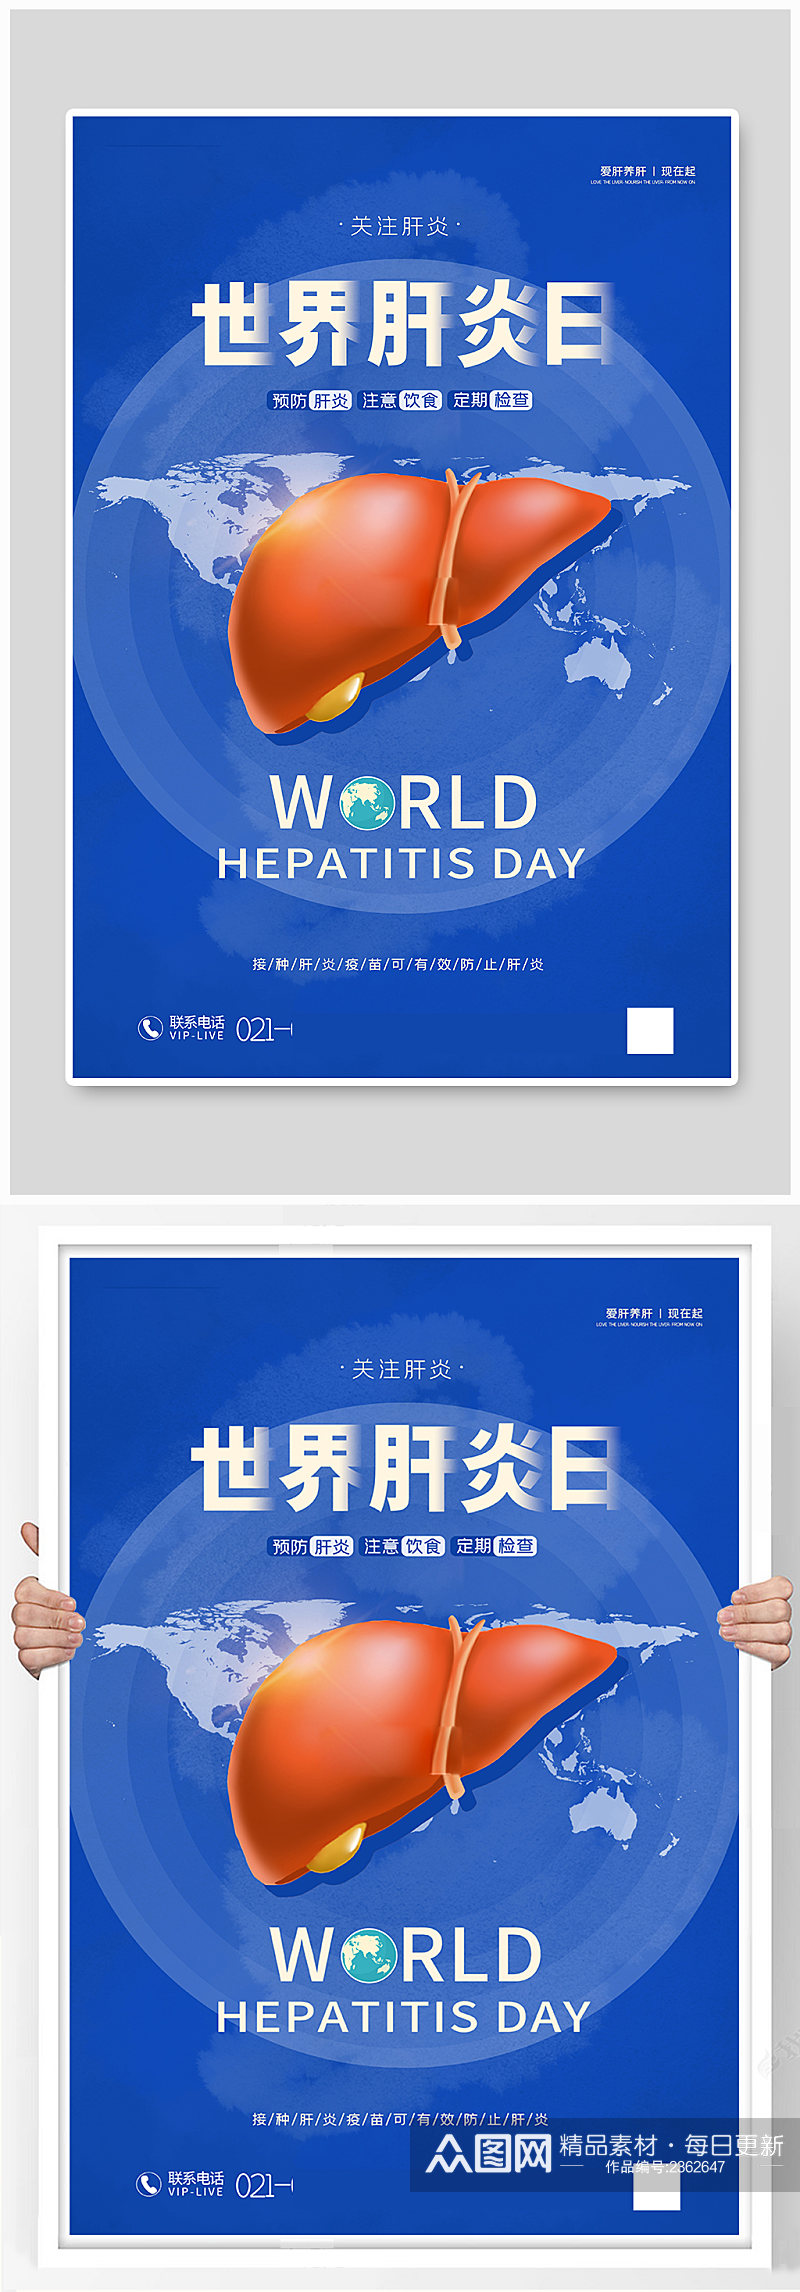 蓝色风世界肝炎日宣传海报素材